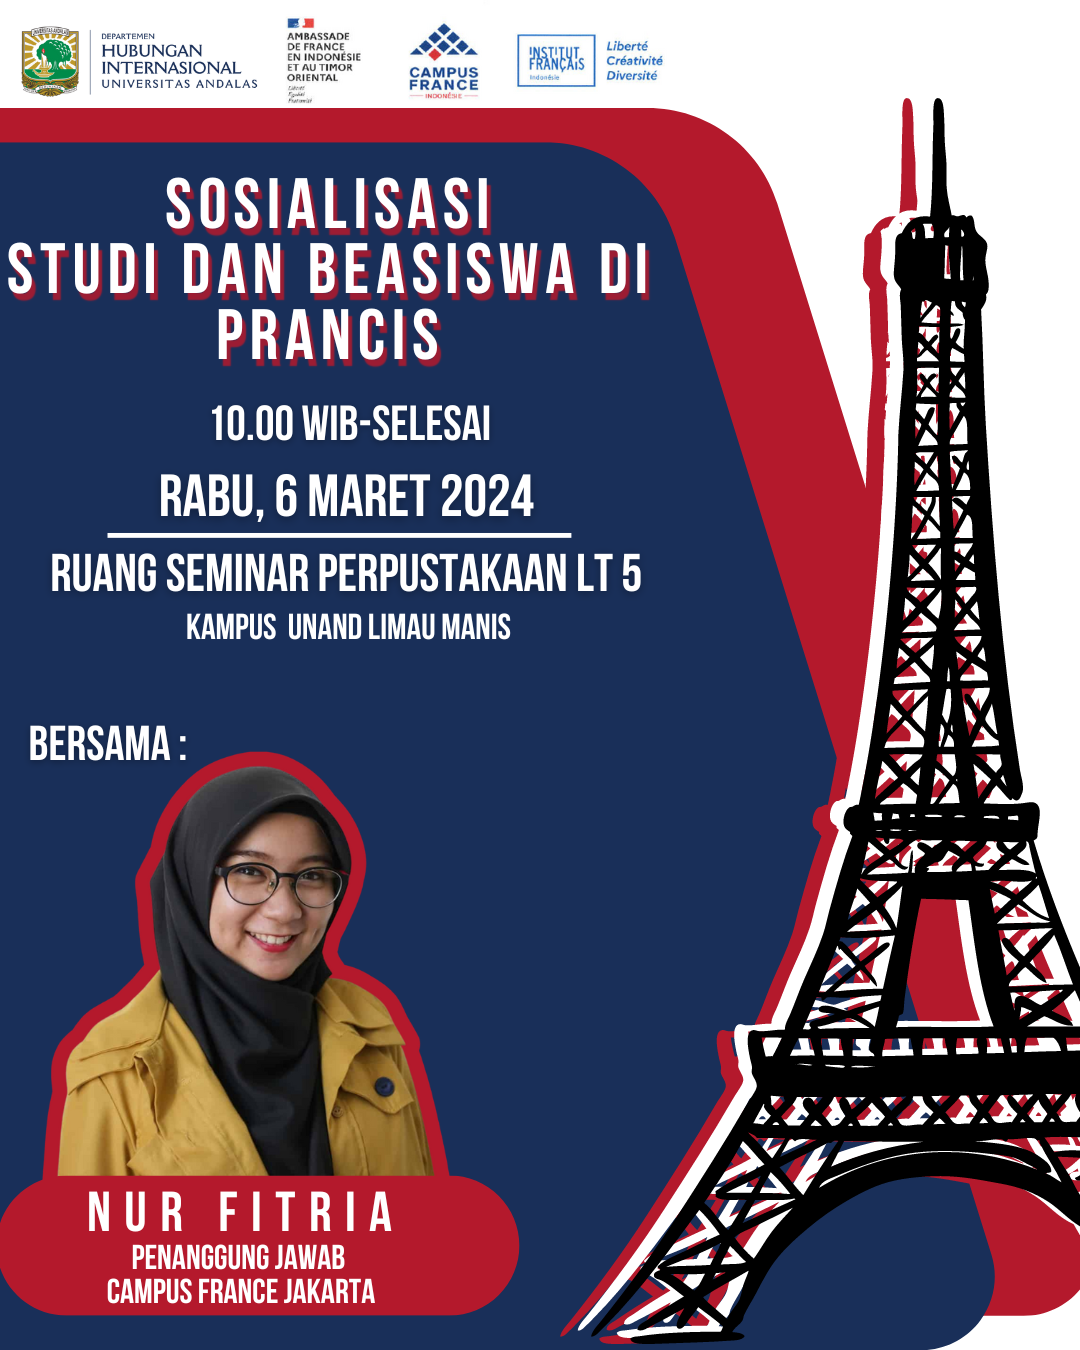 Sosialisasi Studi dan Beasiswa di Prancis bersama Campus France Indonesia